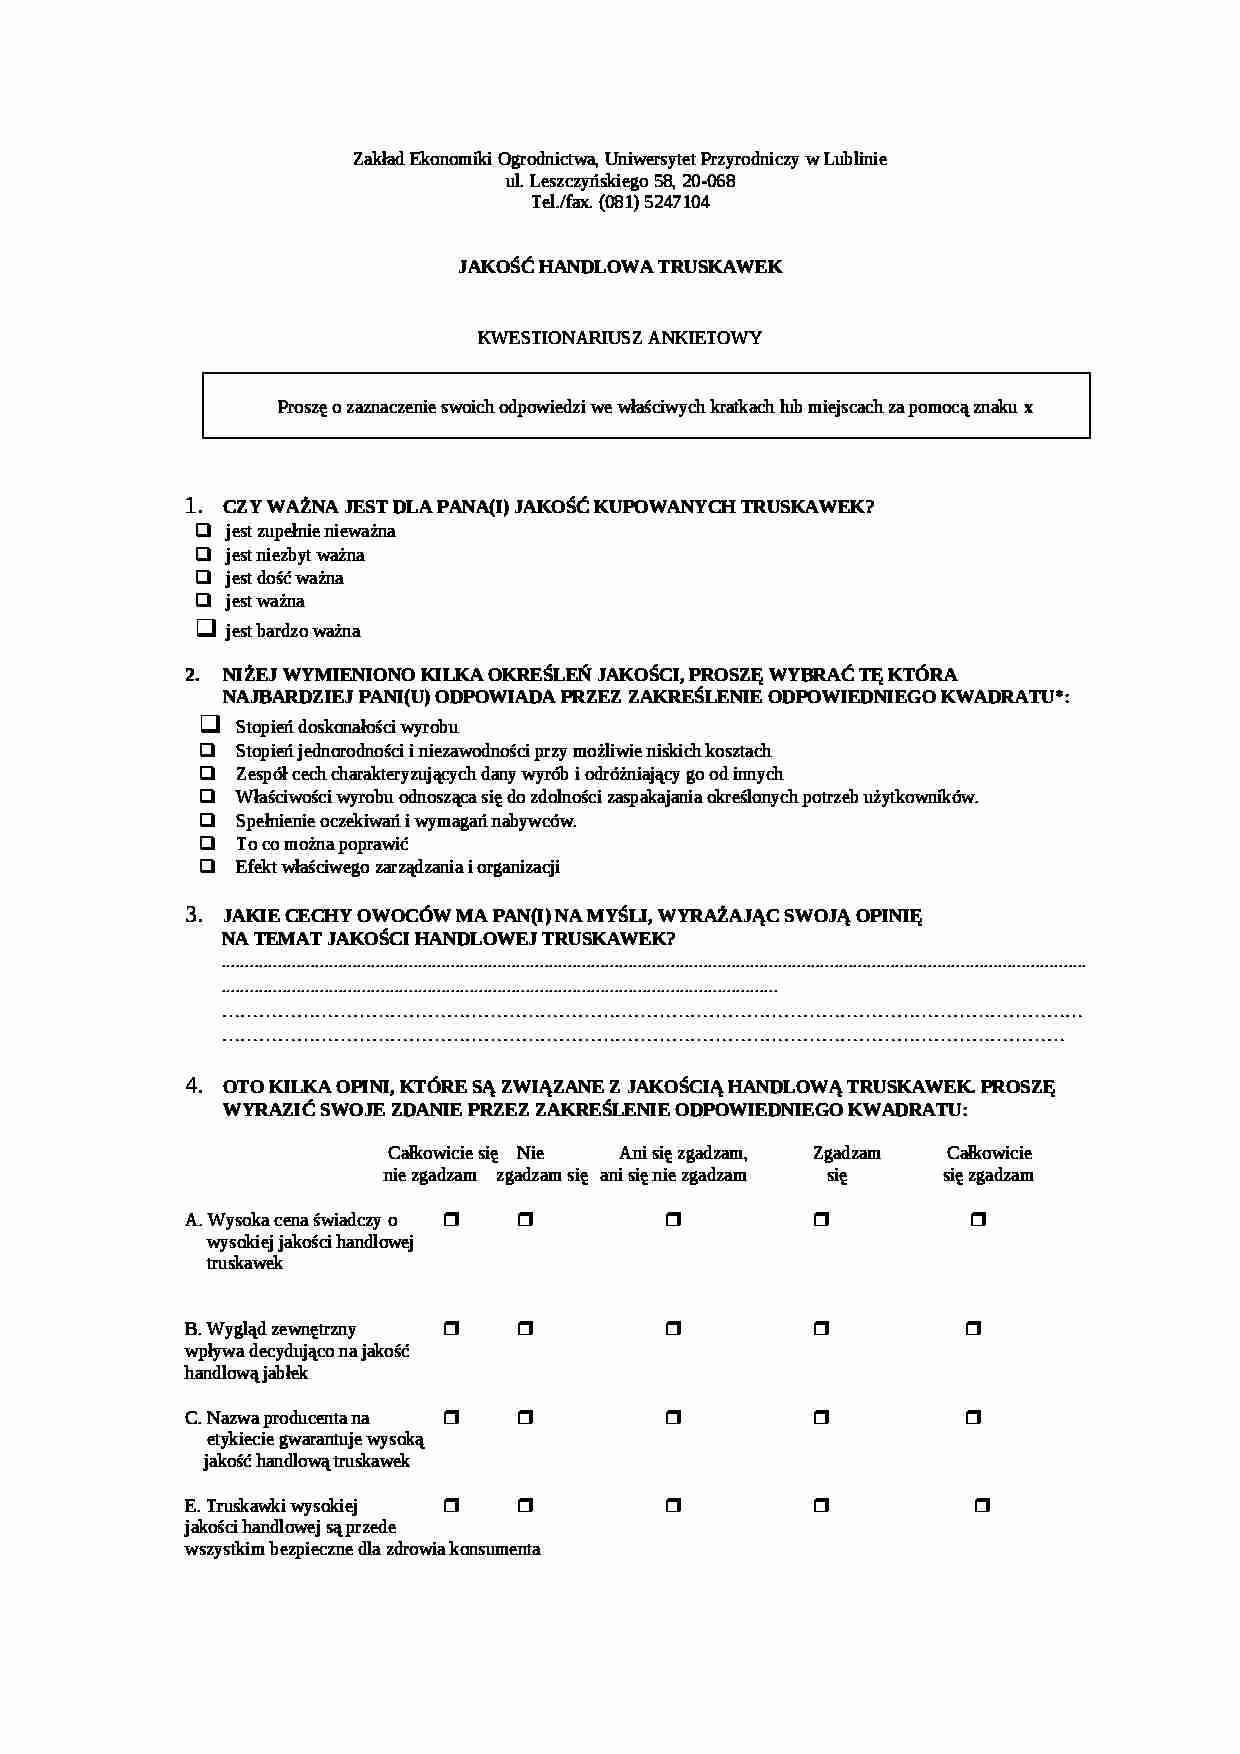 Ankieta dotycząca jakości handlowej truskawek - strona 1